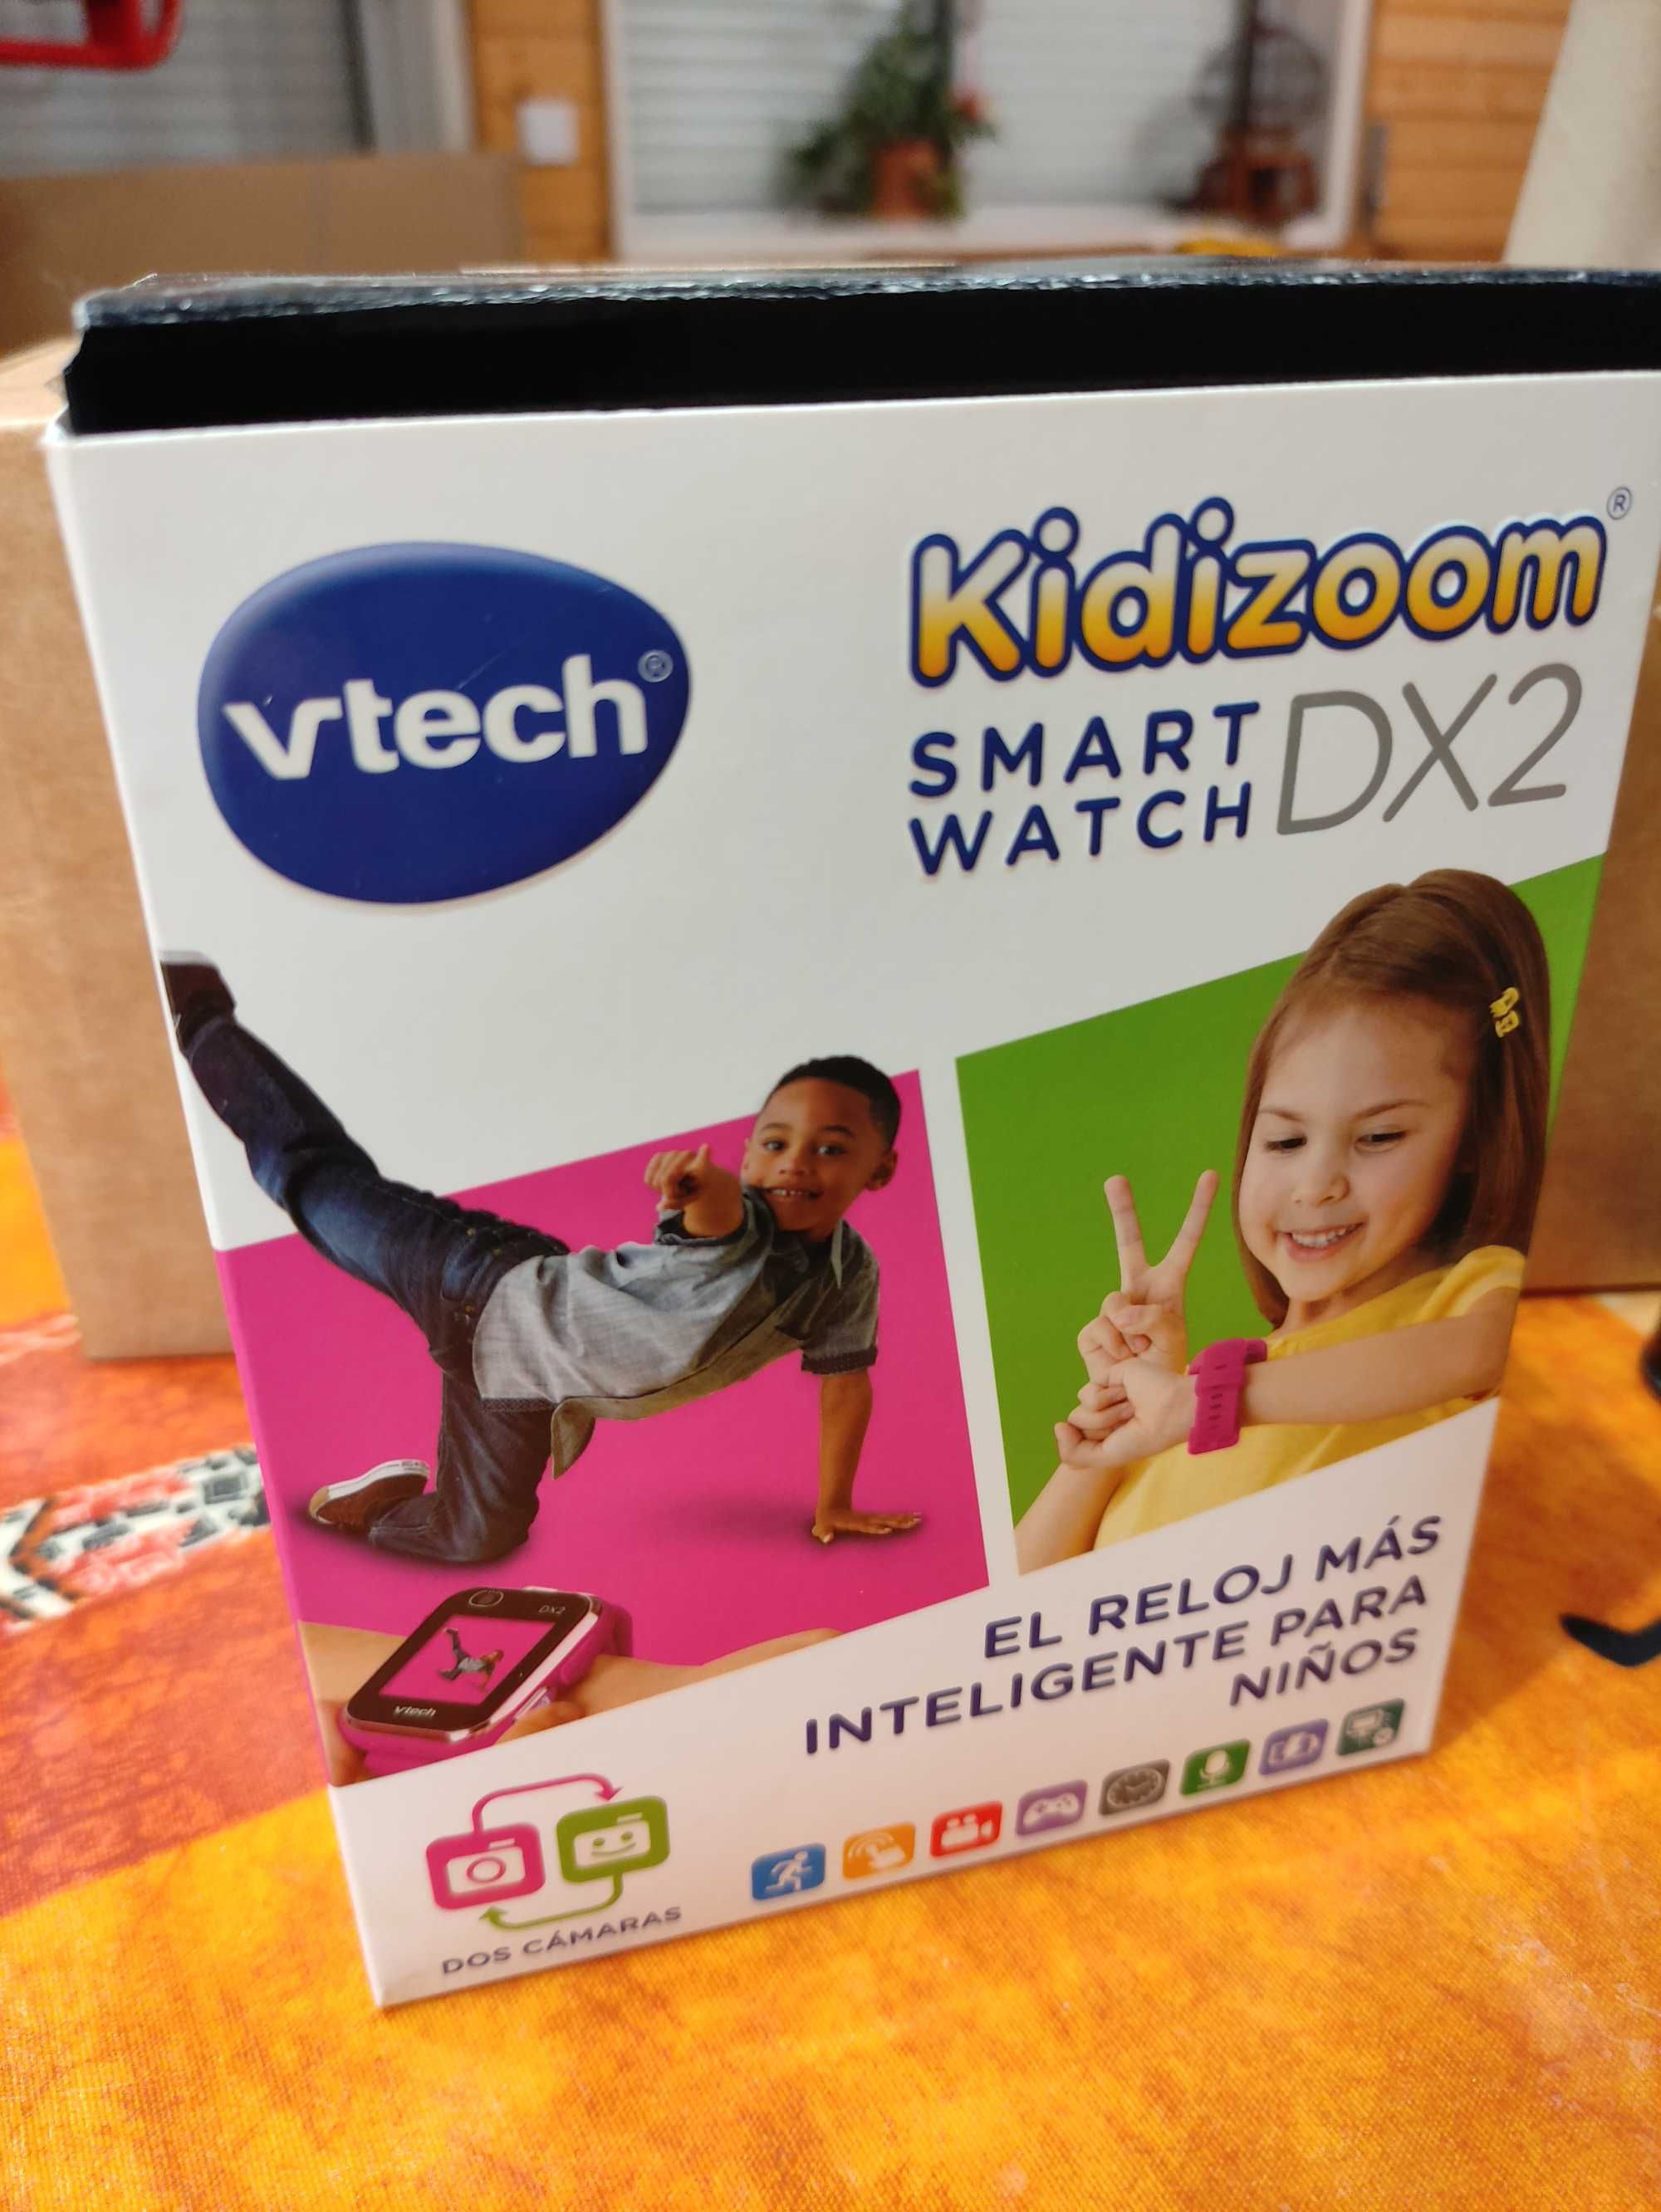 Kidizoom smartwatch DX2